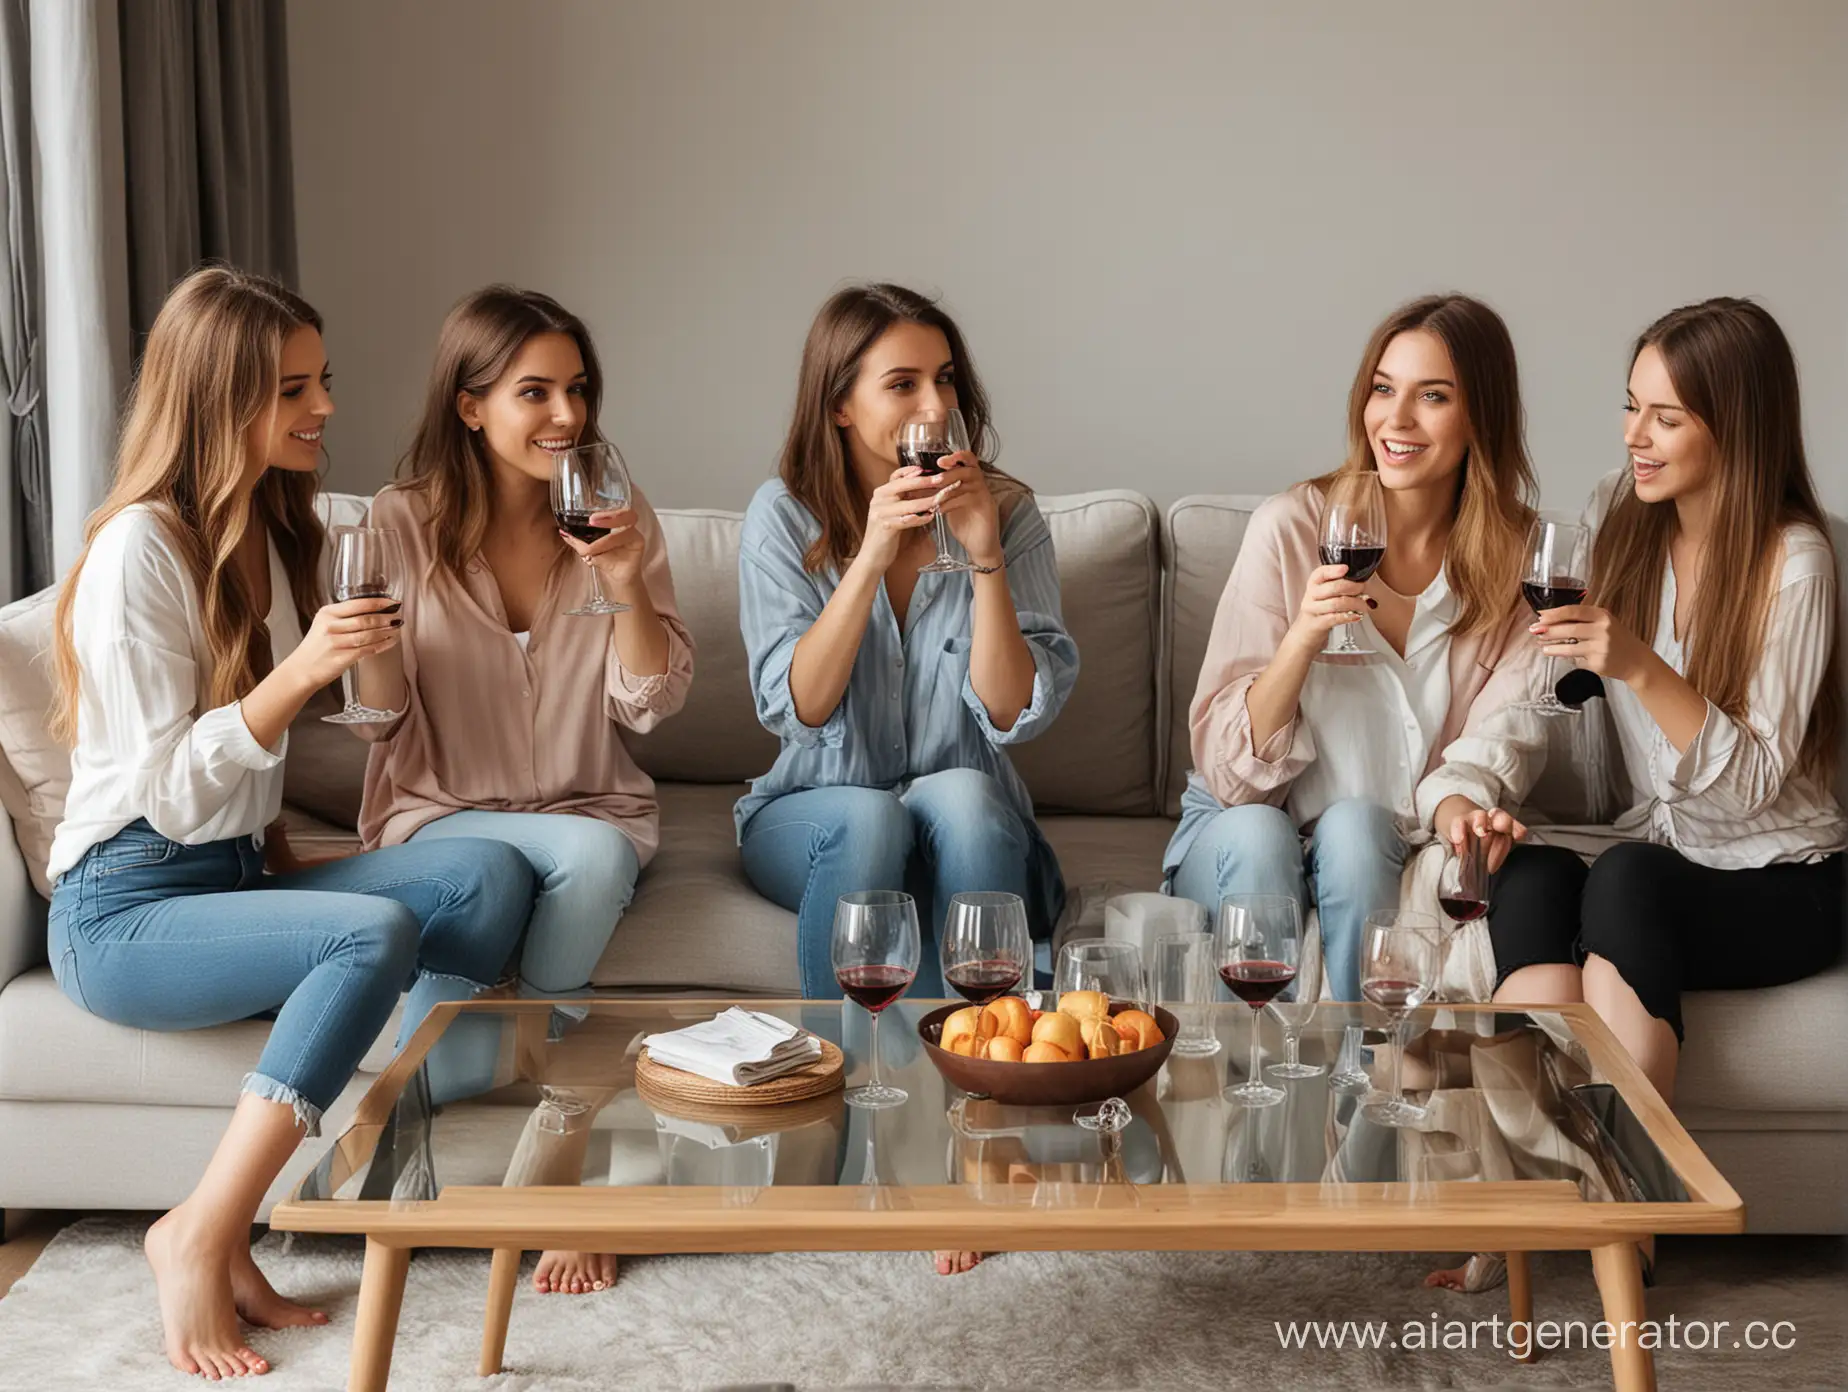 4 девушки в разной одежде пьют  вино 4 бокала дома на диване перед пустым журнальным столом .


